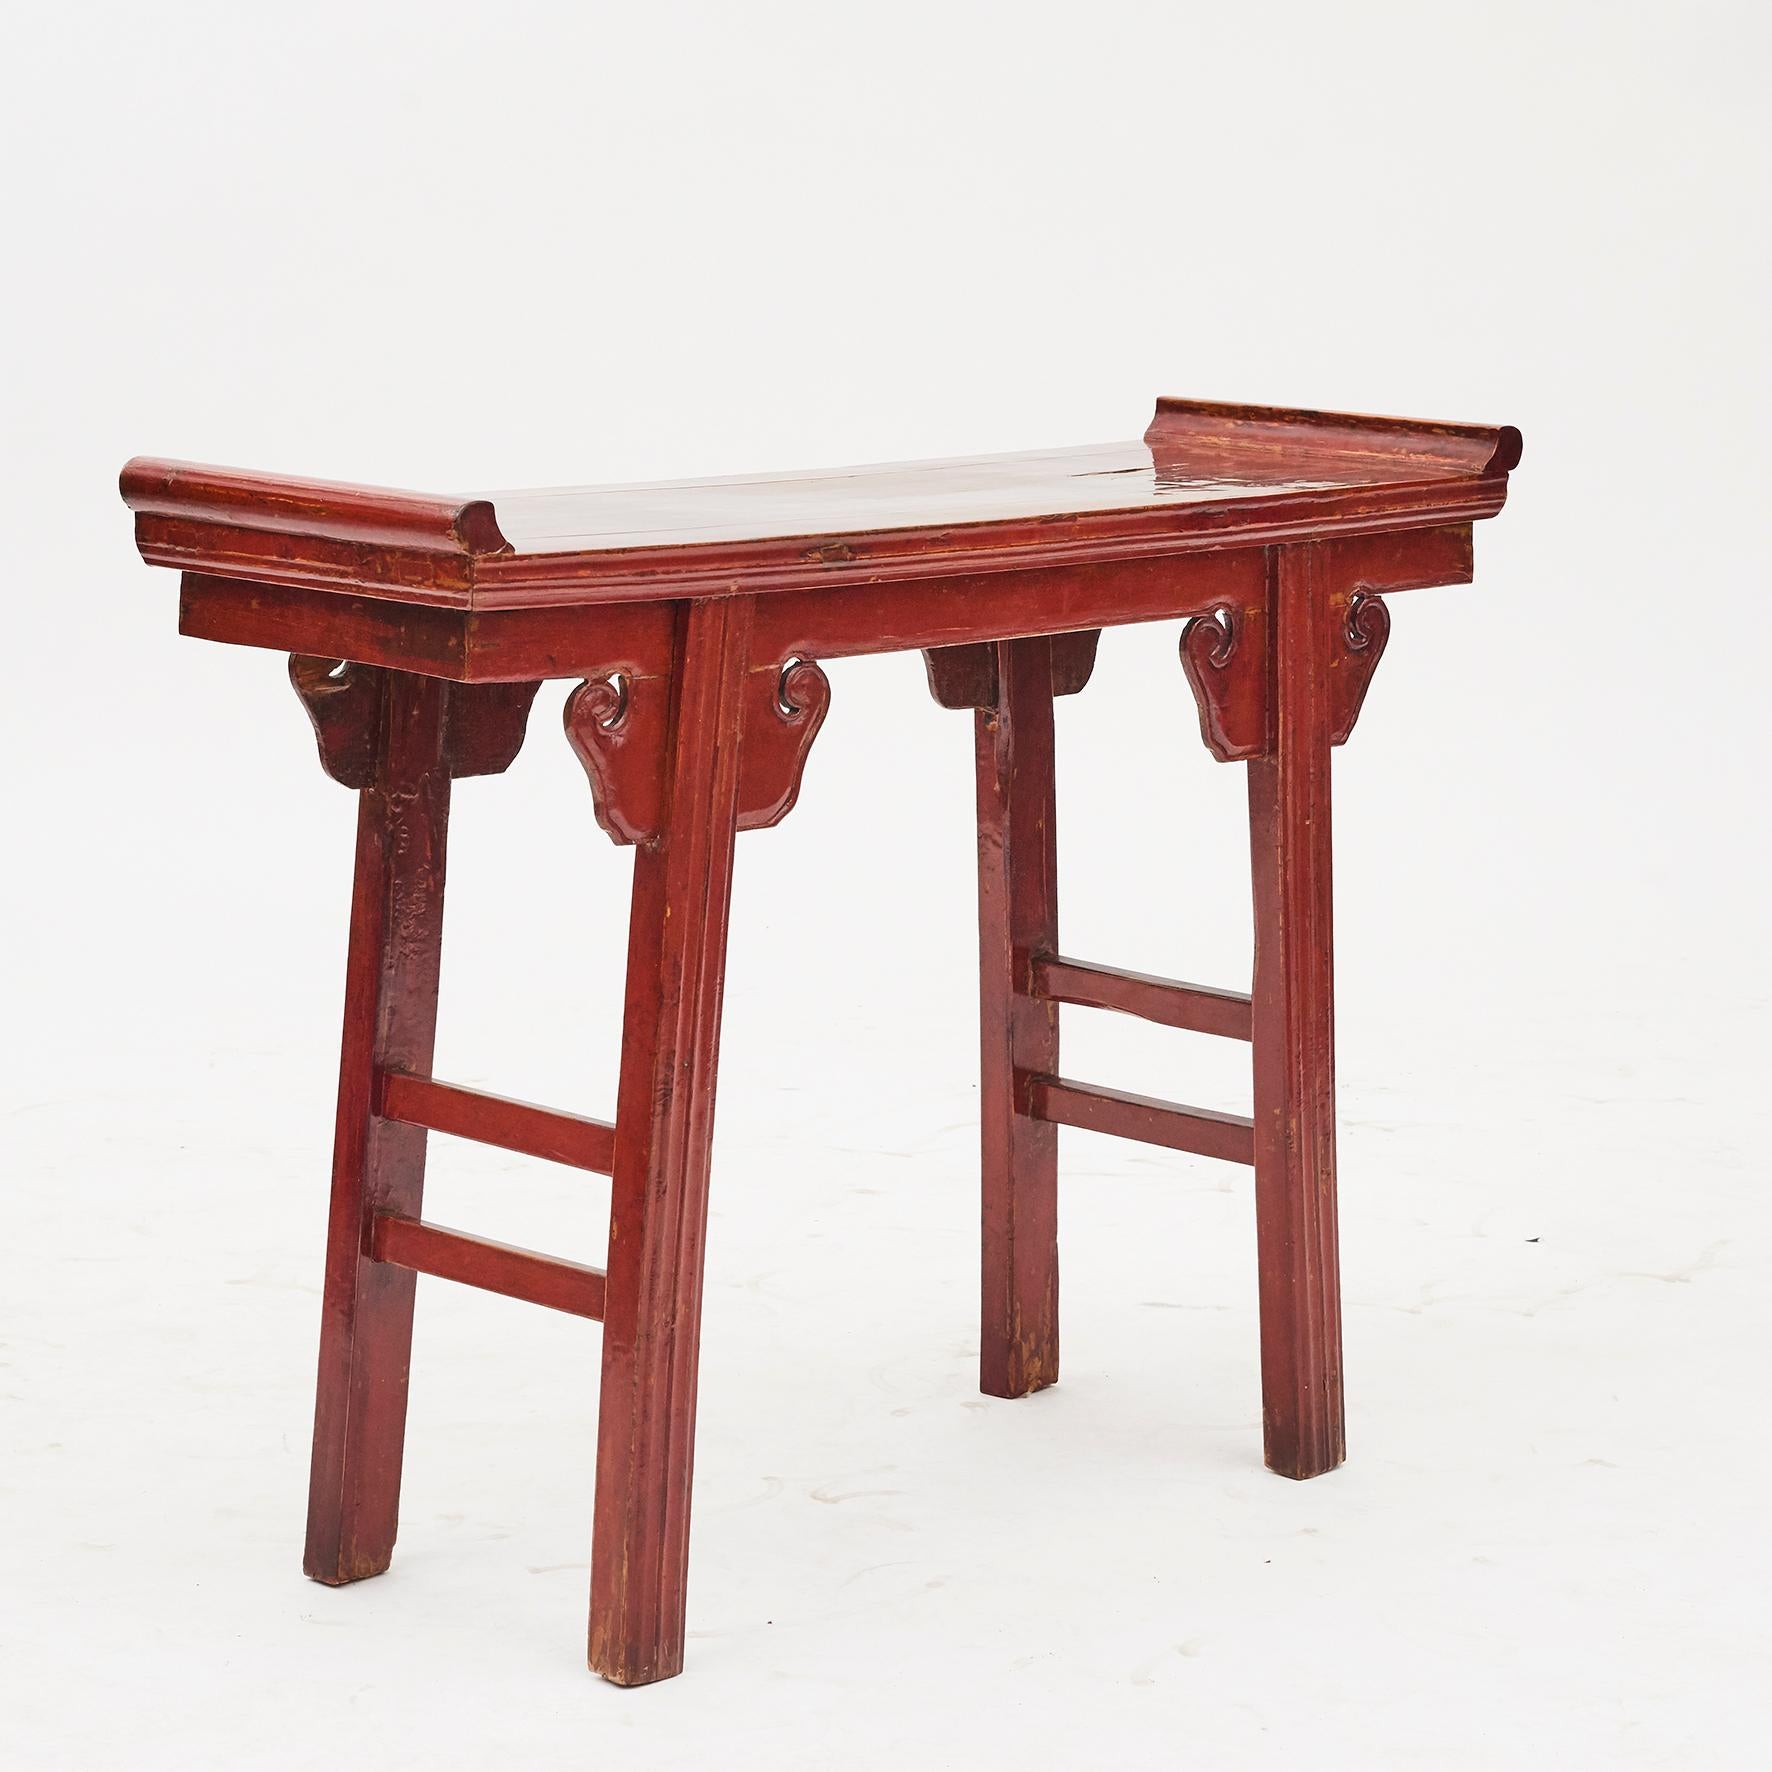 Petit autel / table de communion en bois de pêcher de la province de Zhejiang en Chine. Etat d'origine avec laque rouge avec patine d'ancienneté.

Style Ming, milieu du XIXe siècle.